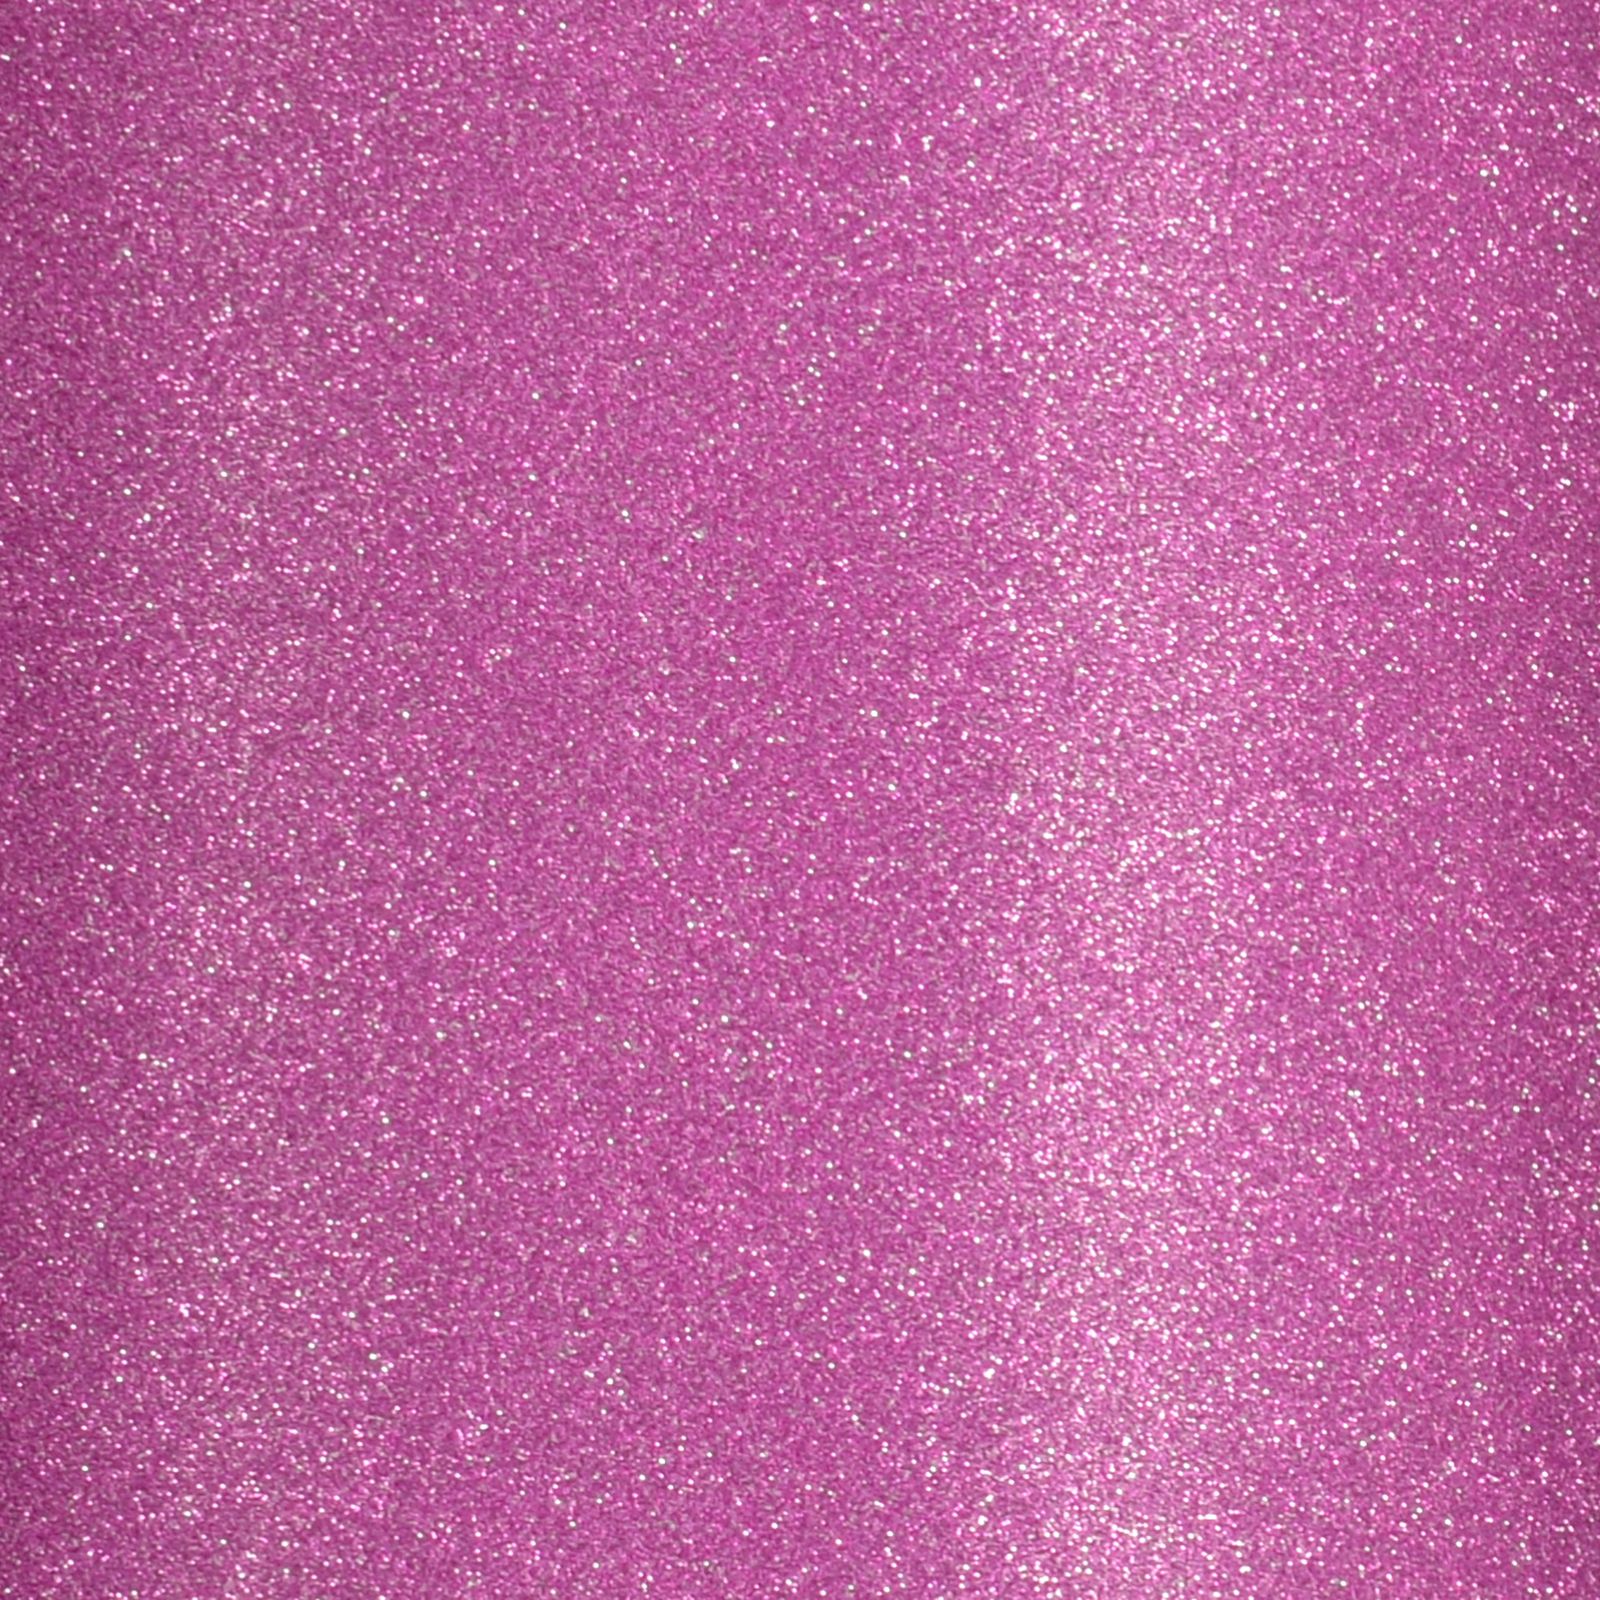 Florence • Glitter Paper 250g A4 Light Pink 5x